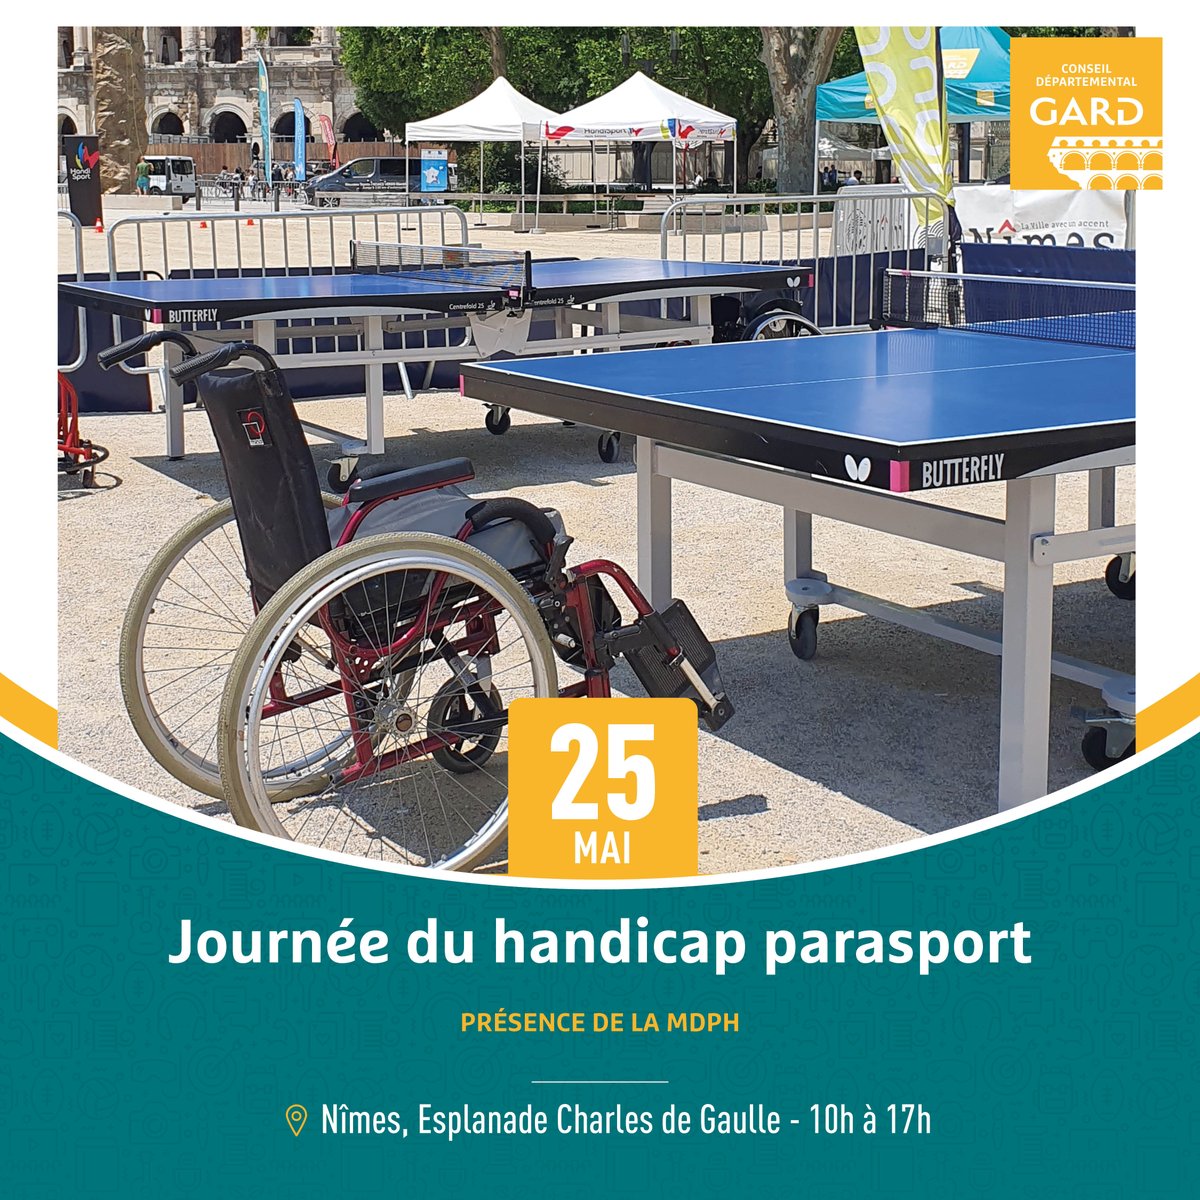 👩‍🦽 La #MDPH sera présente samedi 25 mai, sur l’esplanade Charles-de-Gaulle à Nîmes, à l’occasion de la Journée du handicap et du parasport organisée par le CCAS de @nimes 📍 Rendez-vous dès 10h et jusqu’à 17h 👉 Programme en ligne sur vivrenimes.fr